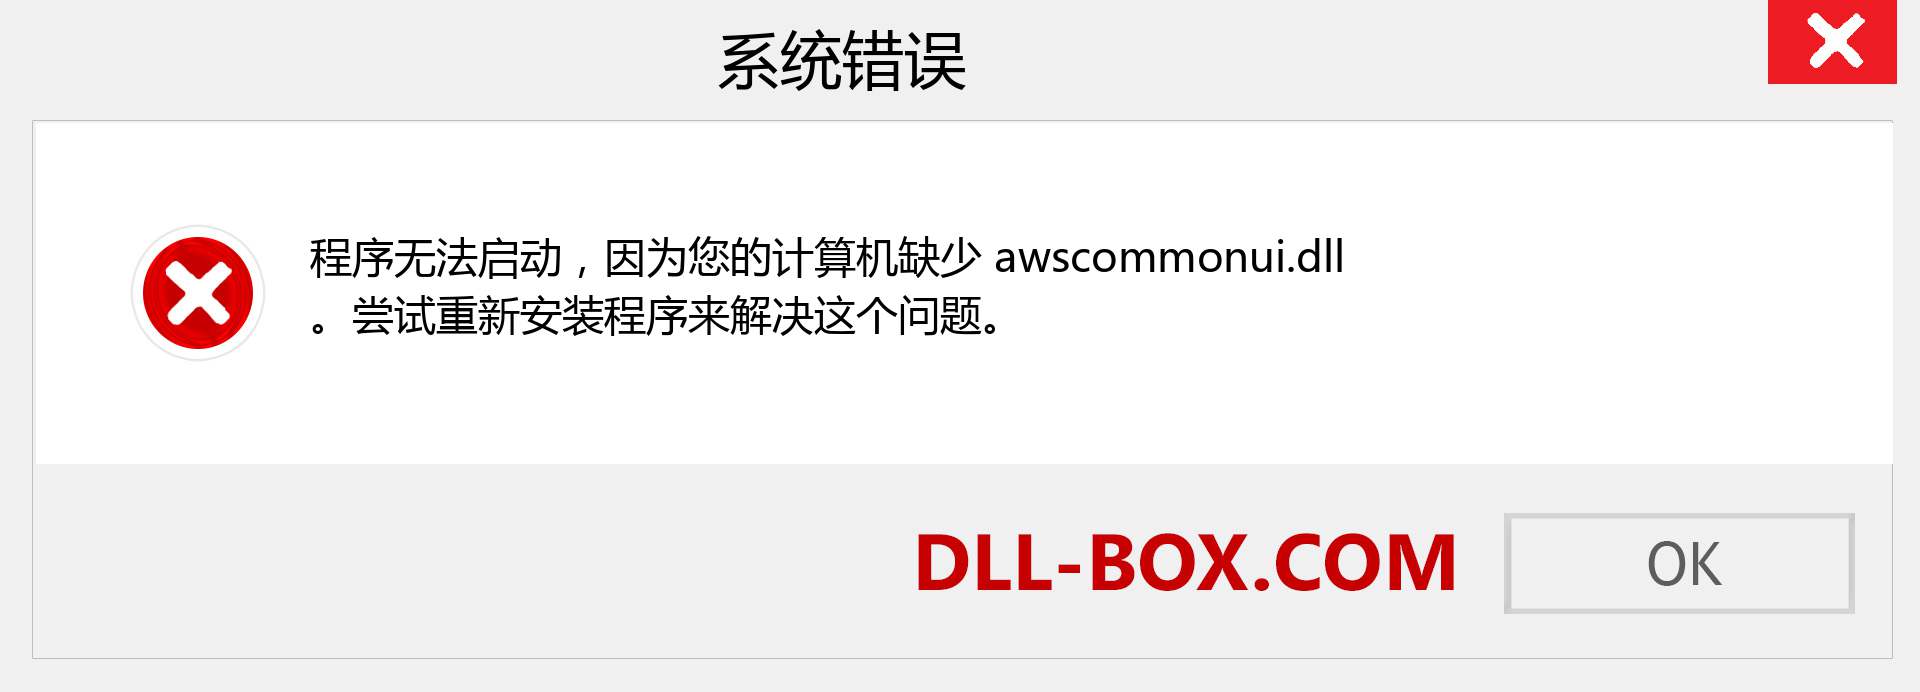 awscommonui.dll 文件丢失？。 适用于 Windows 7、8、10 的下载 - 修复 Windows、照片、图像上的 awscommonui dll 丢失错误